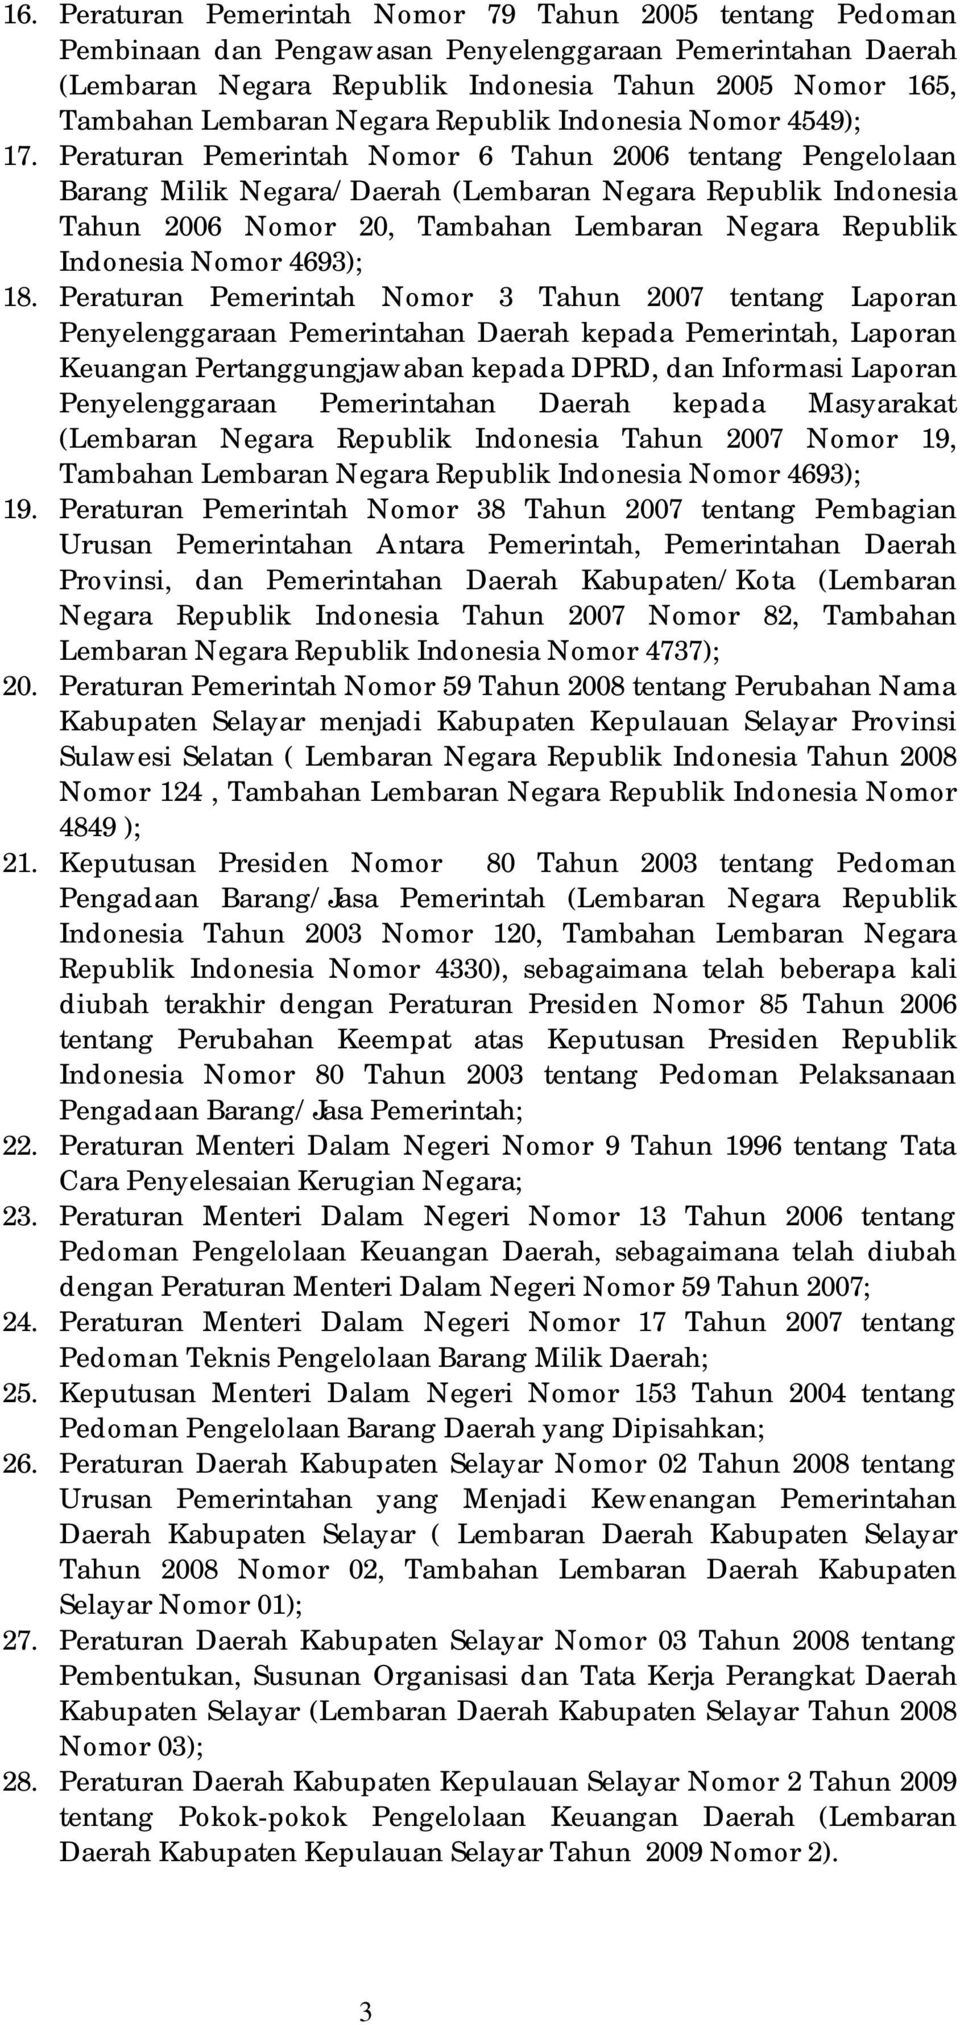 Peraturan Pemerintah Nomor 6 Tahun 2006 tentang Pengelolaan Barang Milik Negara/Daerah (Lembaran Negara Republik Indonesia Tahun 2006 Nomor 20, Tambahan Lembaran Negara Republik Indonesia Nomor